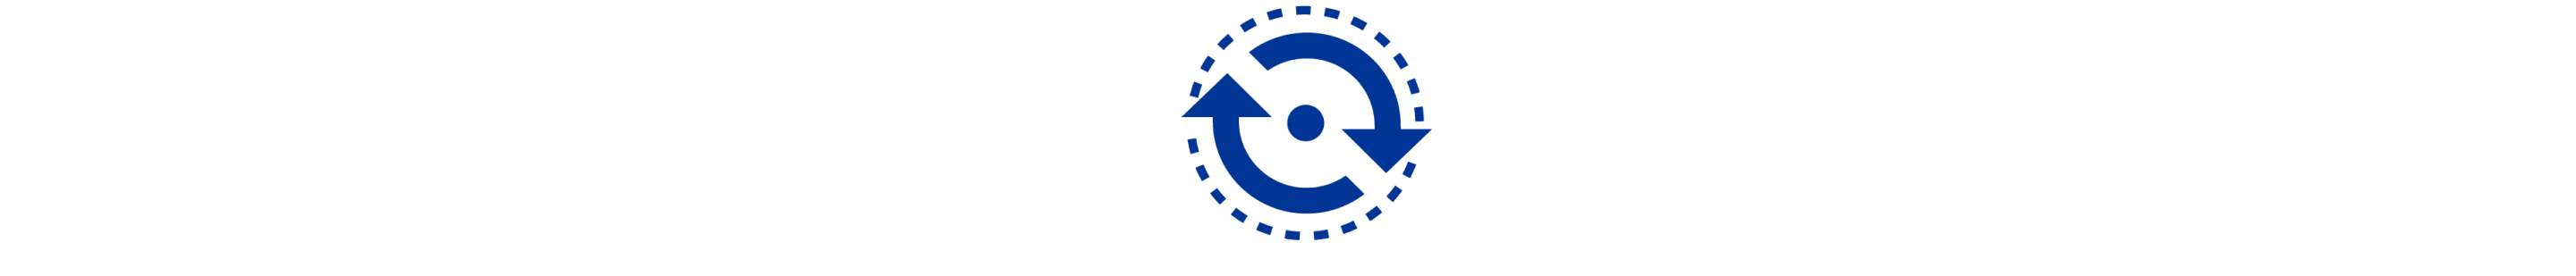 Icono azul que muestra líneas punteadas y dos flechas que rodean un círculo pequeño